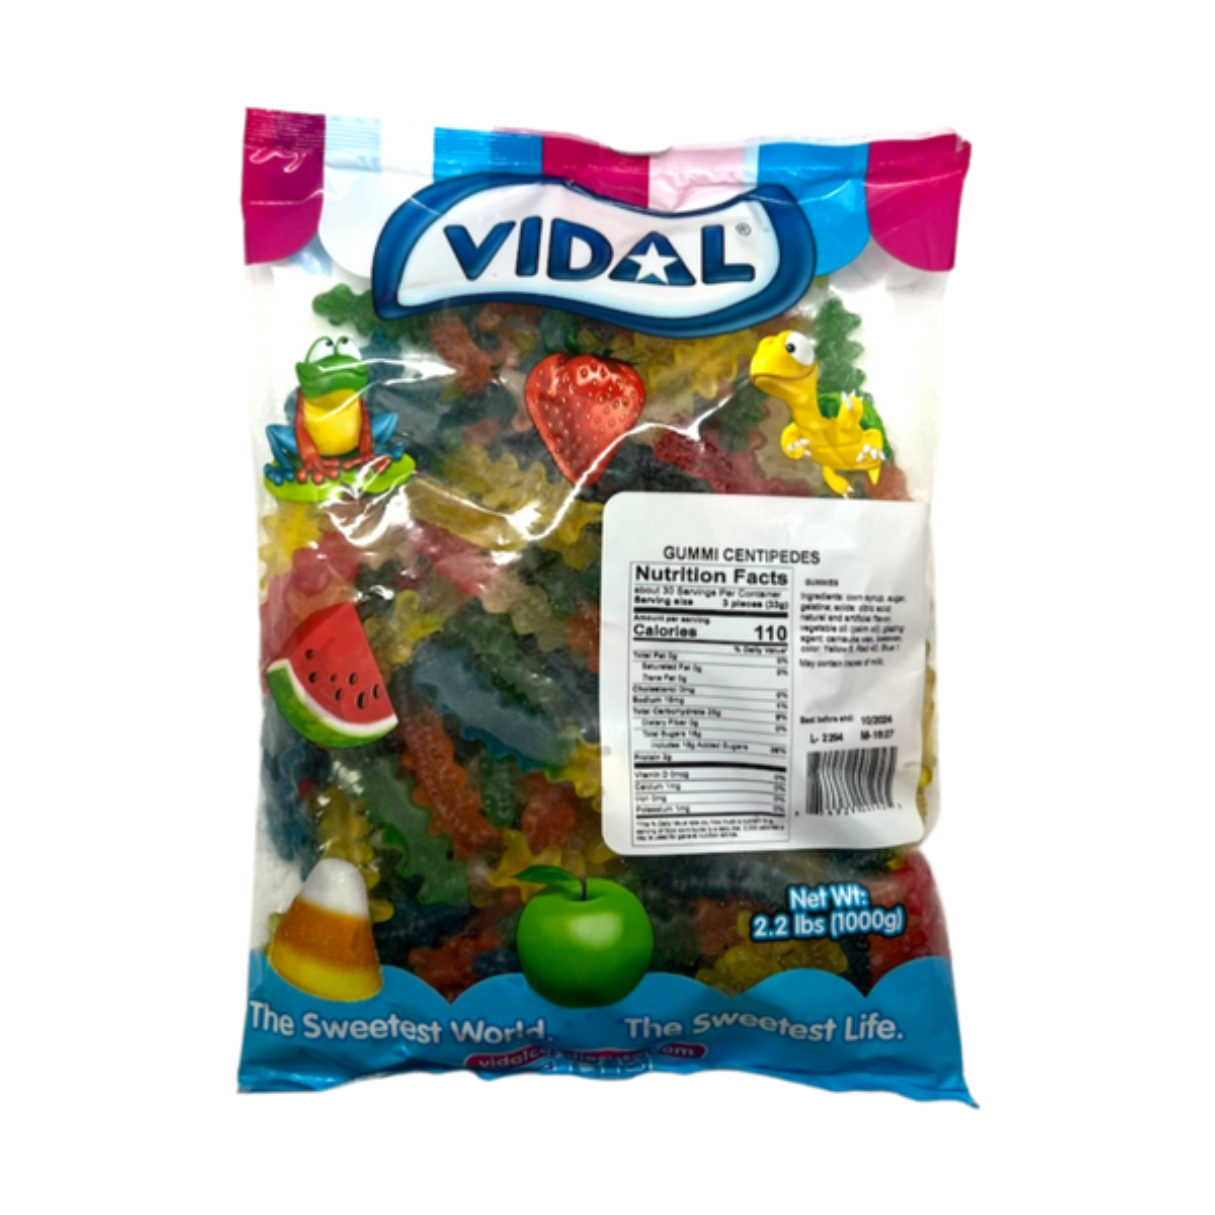 Vidal Gummi Centipedes Bag 2.2lb - 1ct